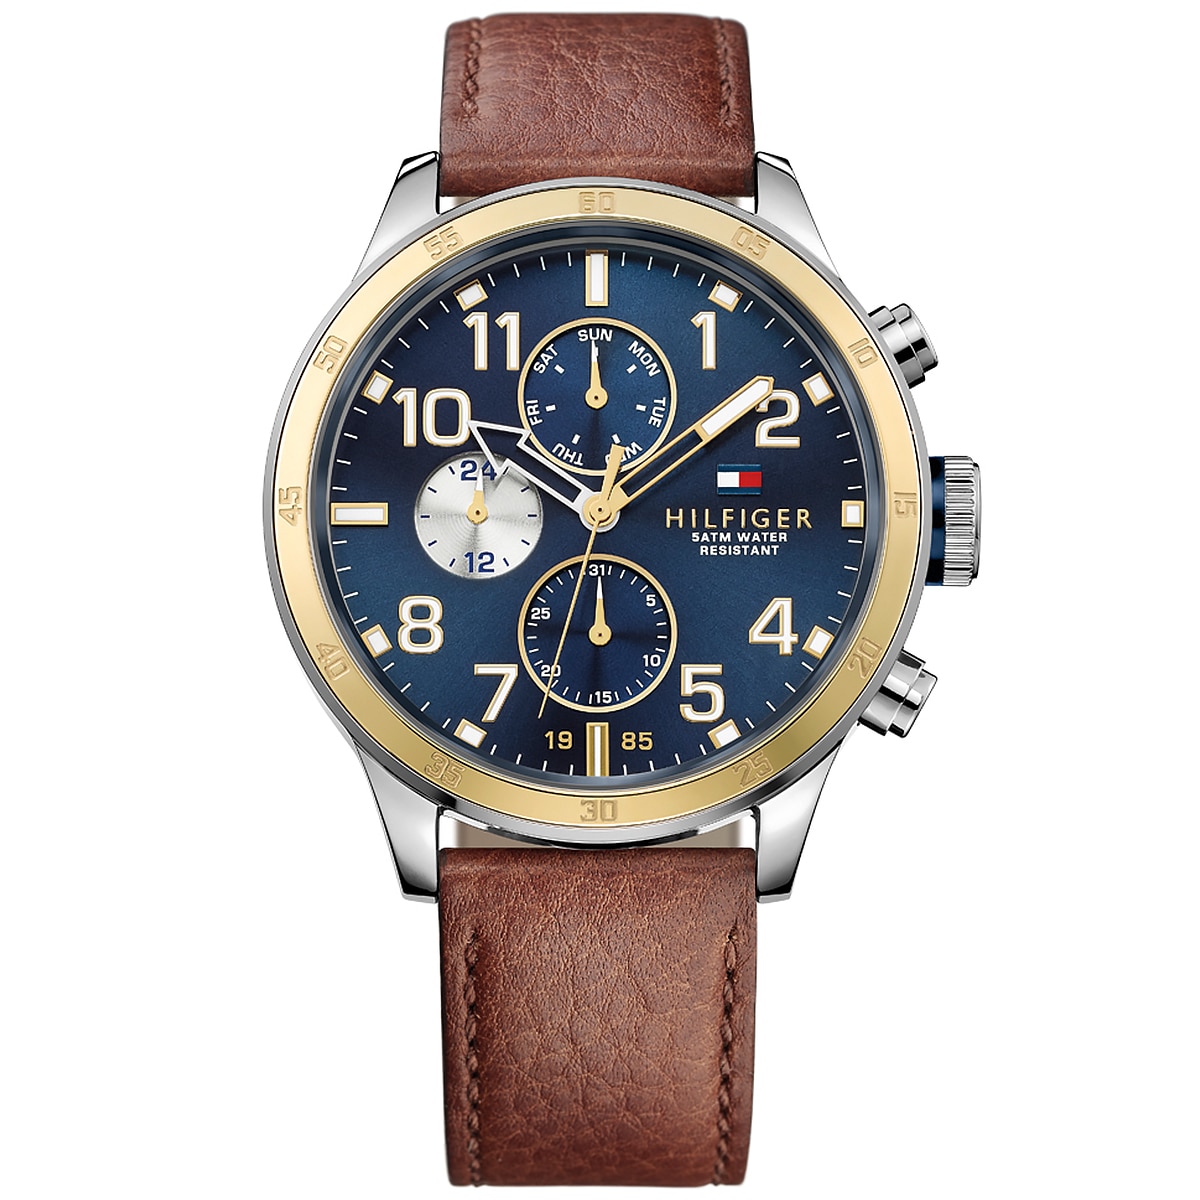 Tommy Hilfiger 1791137 - Men's TT Navy DL Leather Watch